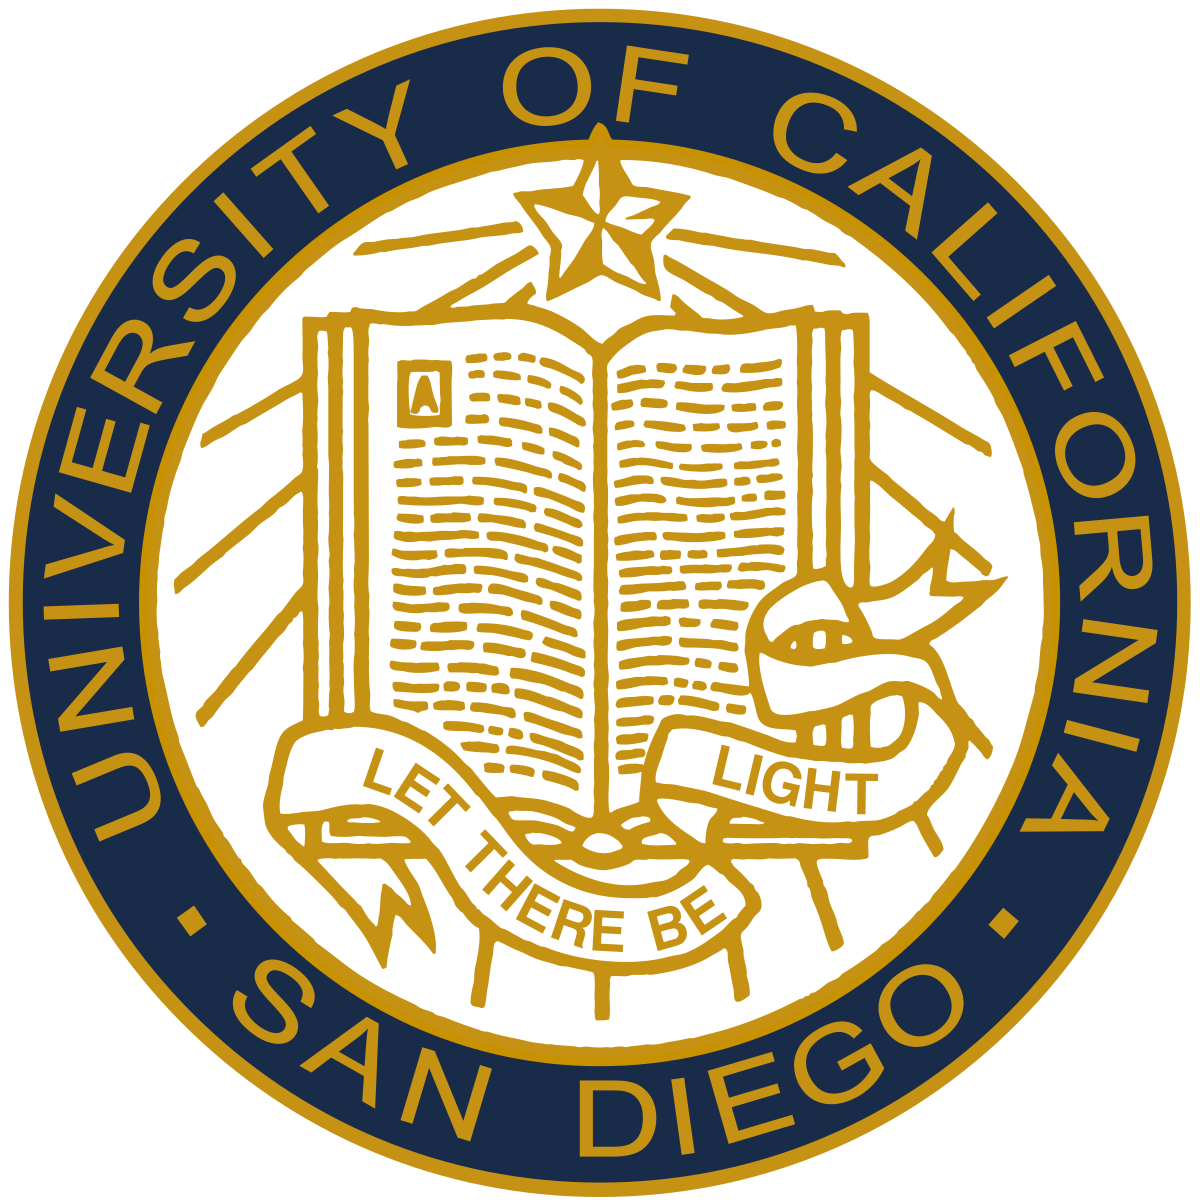 UC San Diego'da Legal ve Business English Deneyimi!